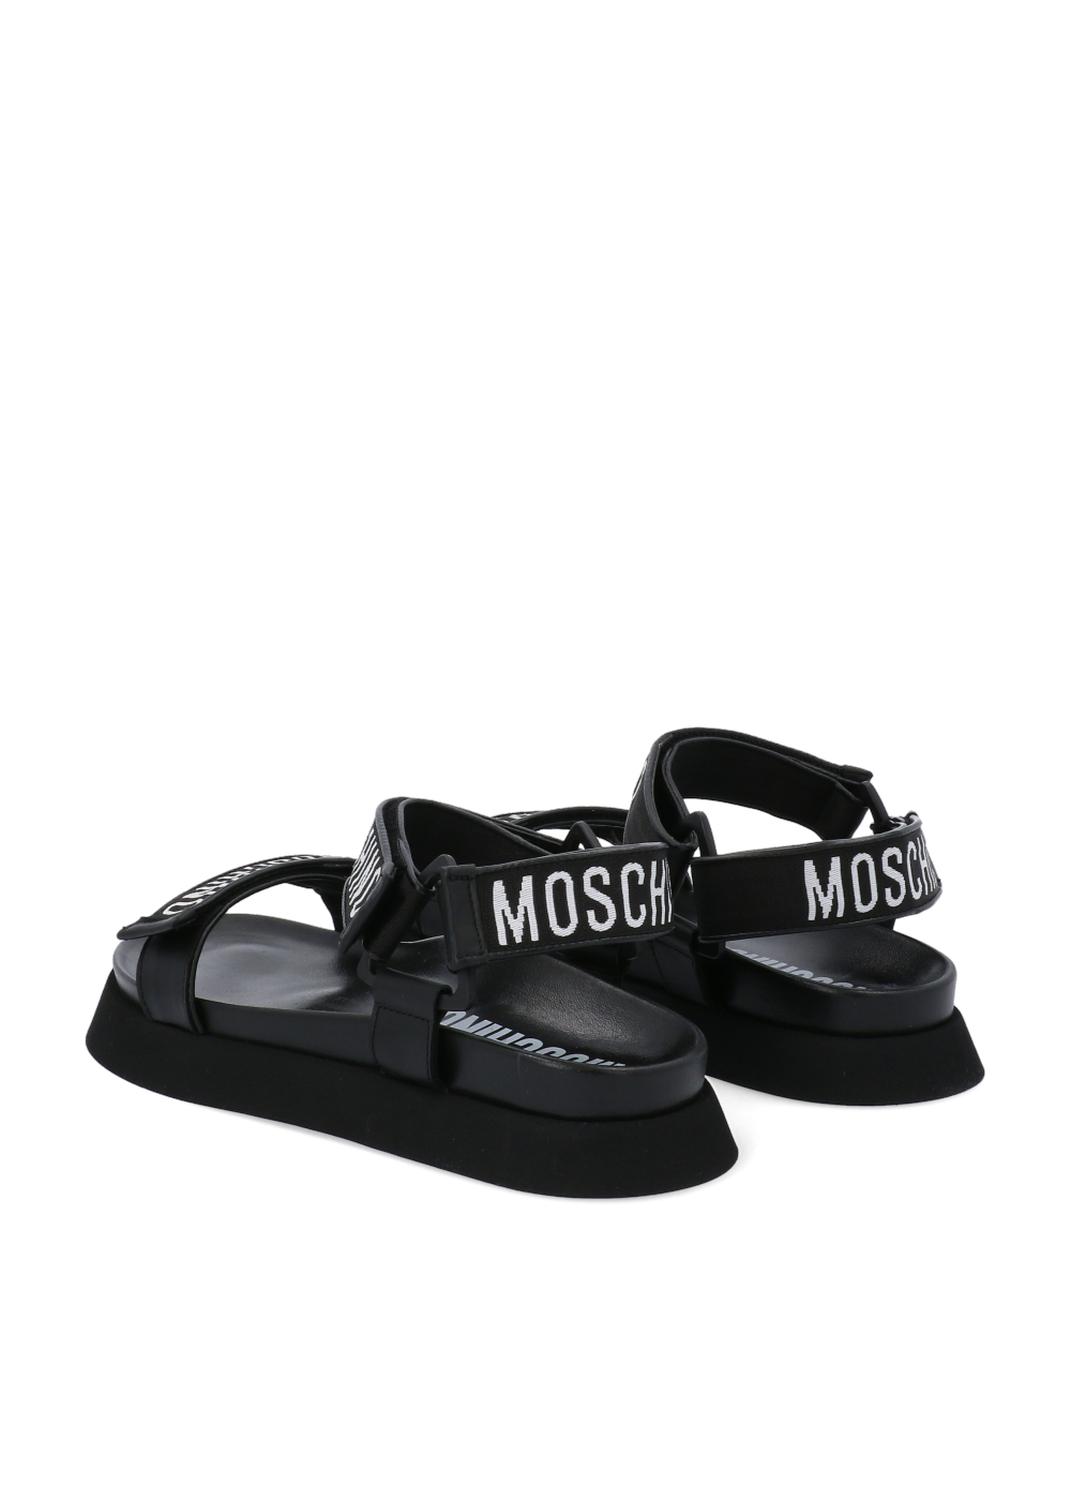 Moschino sandalias con correas bordadas MSC-MB16024 - LOUDER Lifestyle